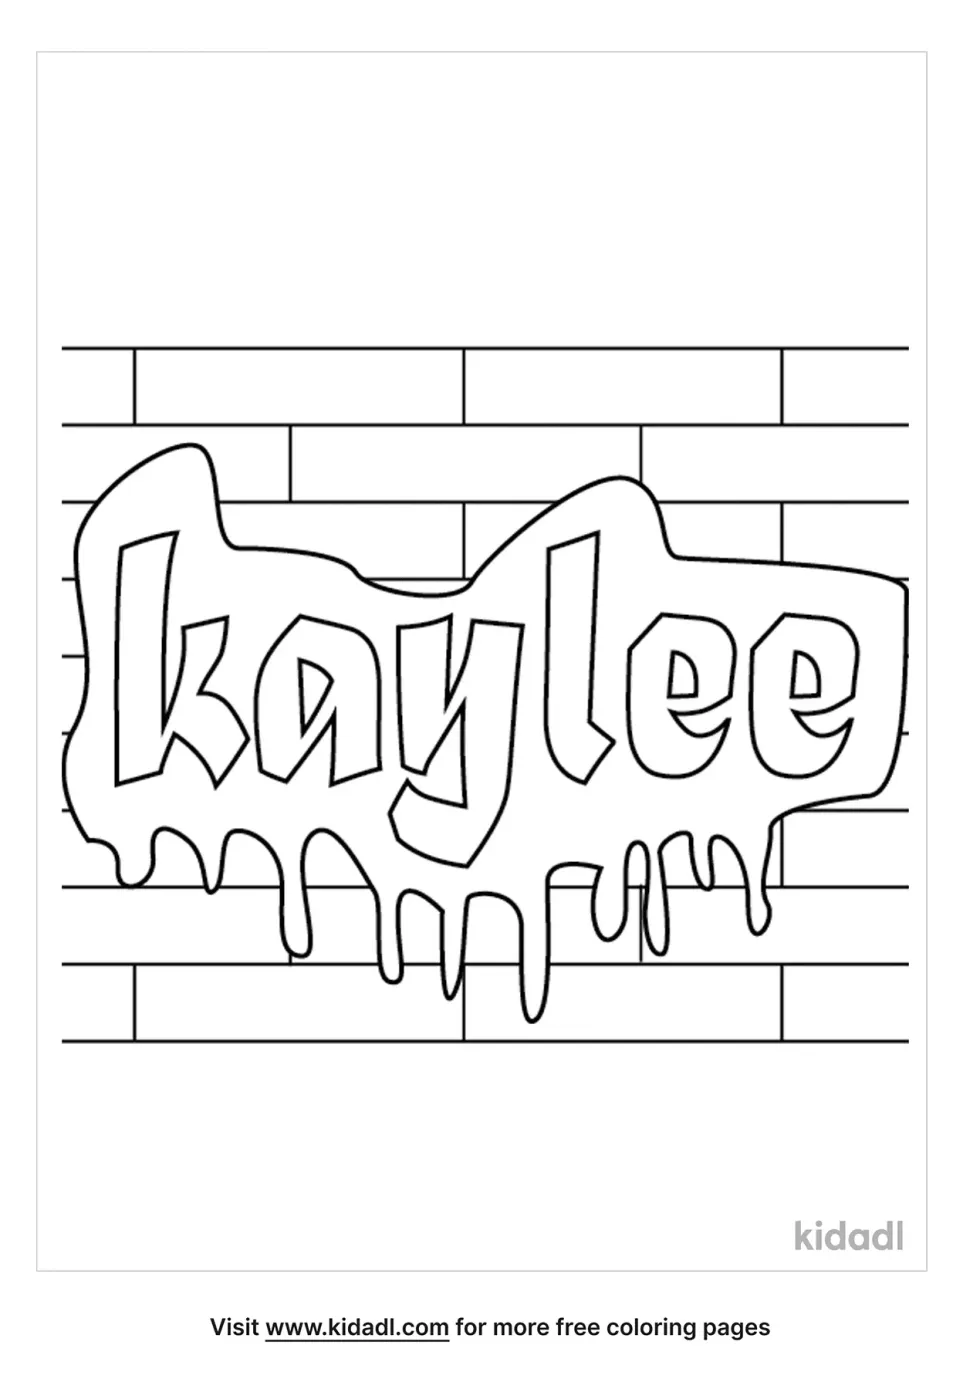 Graffiti Kaylee